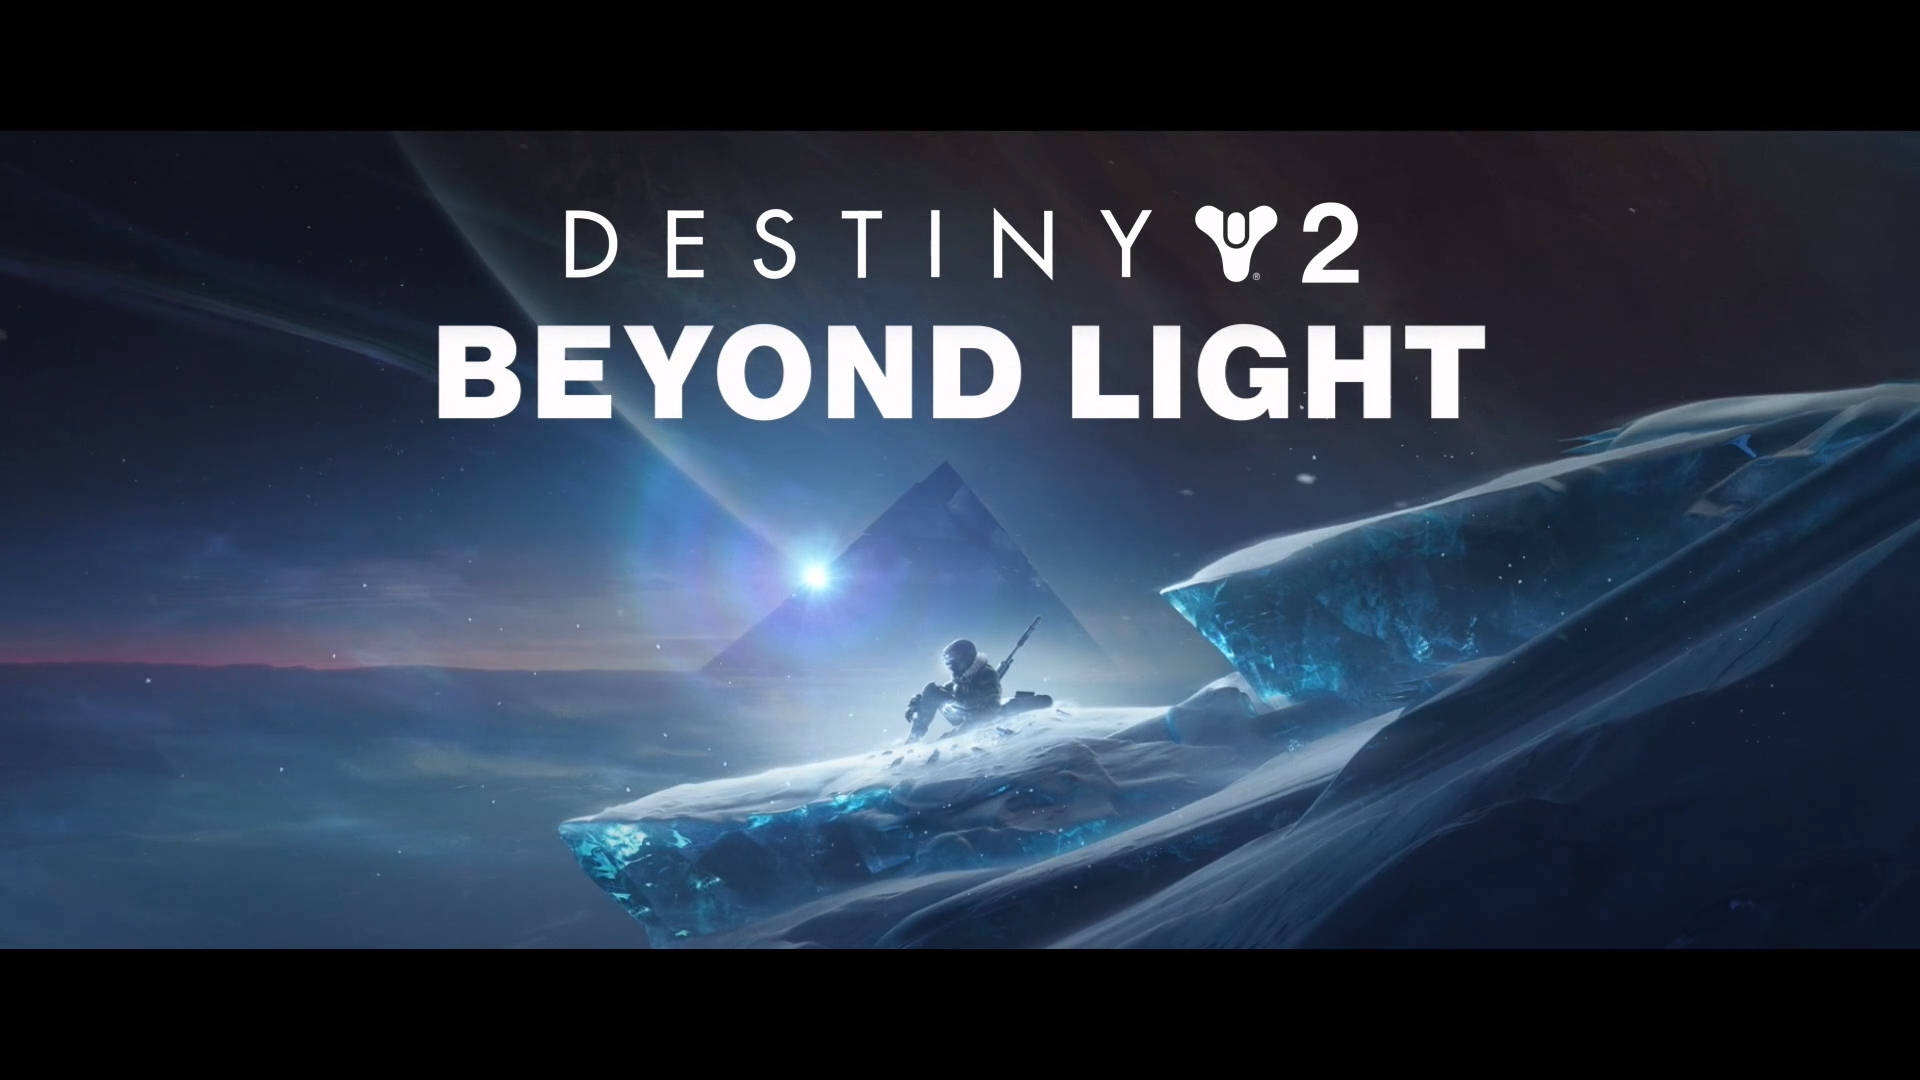 Fondods De Destiny 2 Beyond Light